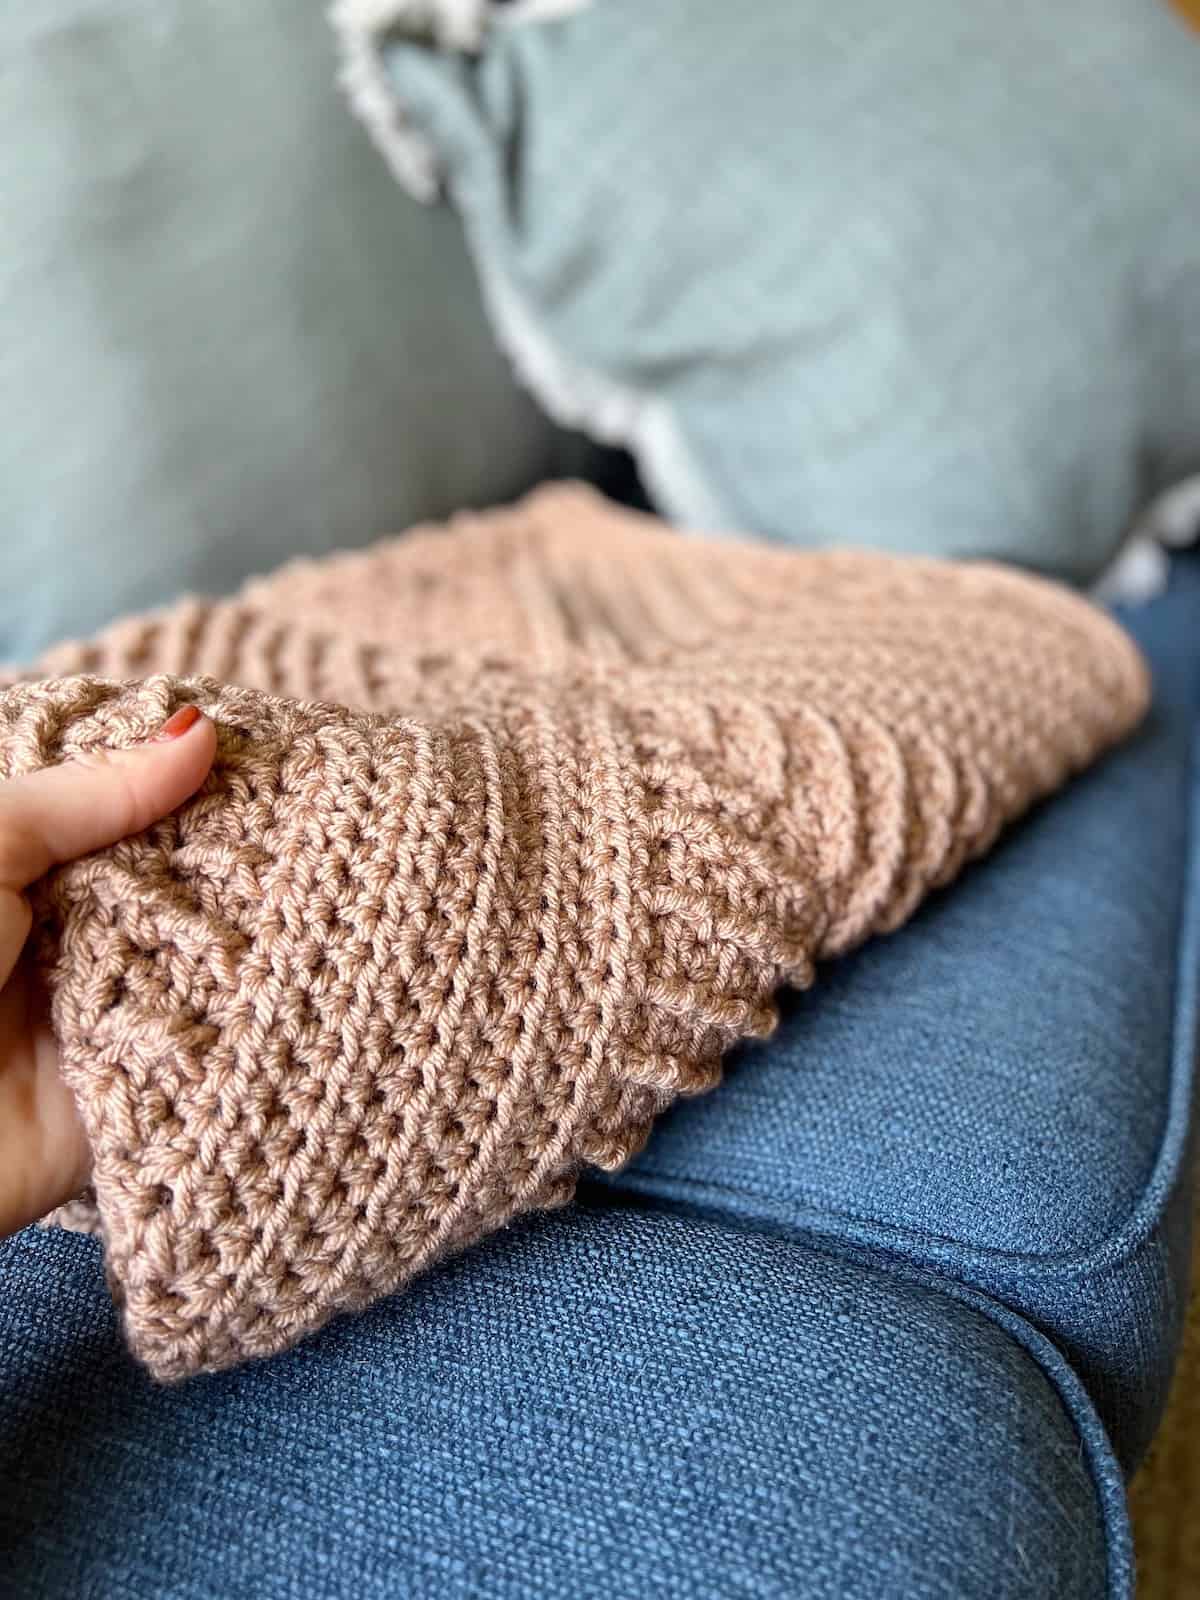 Hand holding side of folded textured crochet blanket.